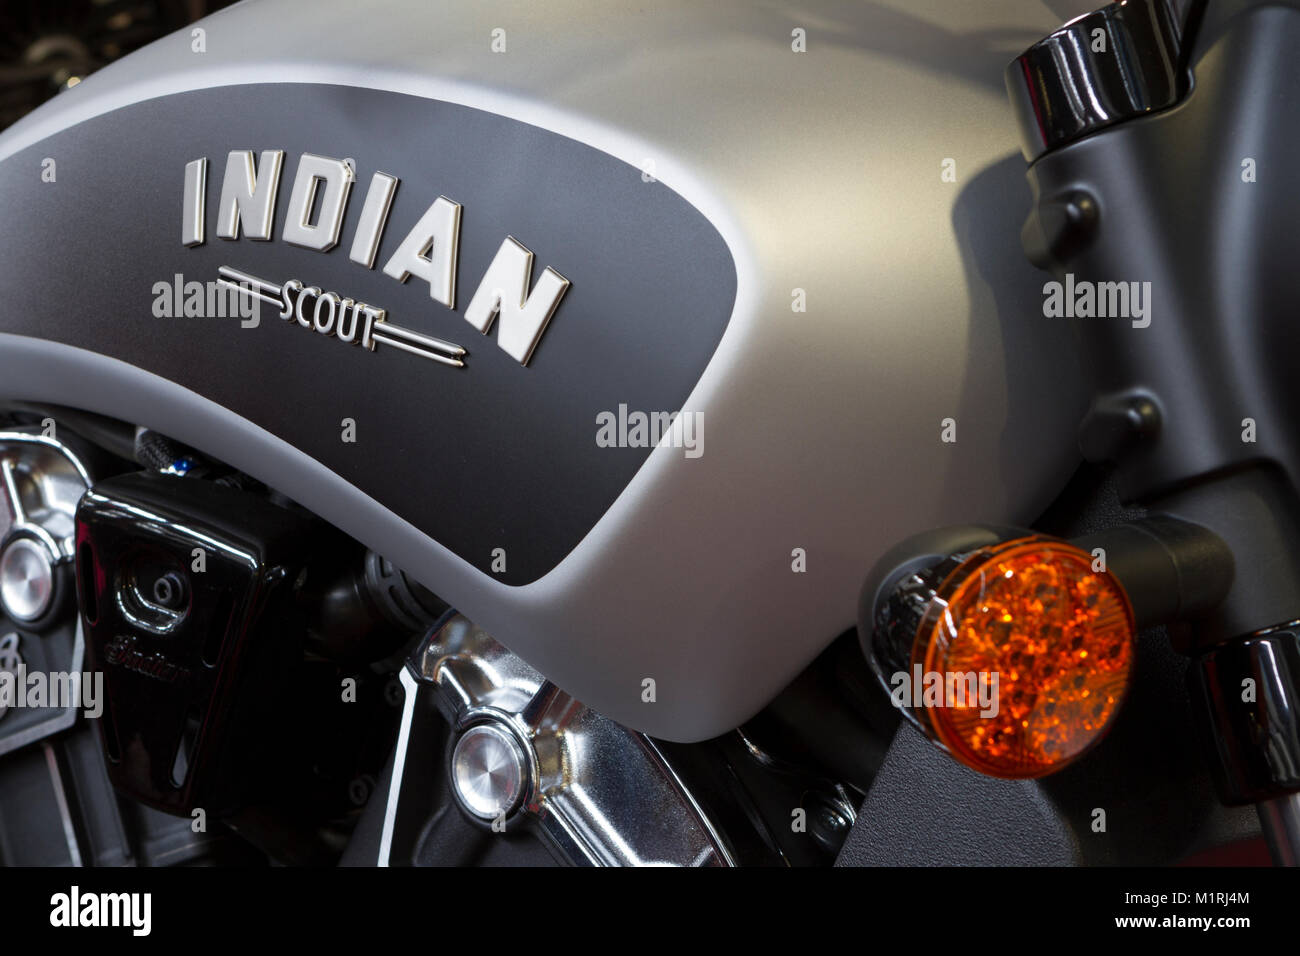 vector de logotipo de motocicletas indias